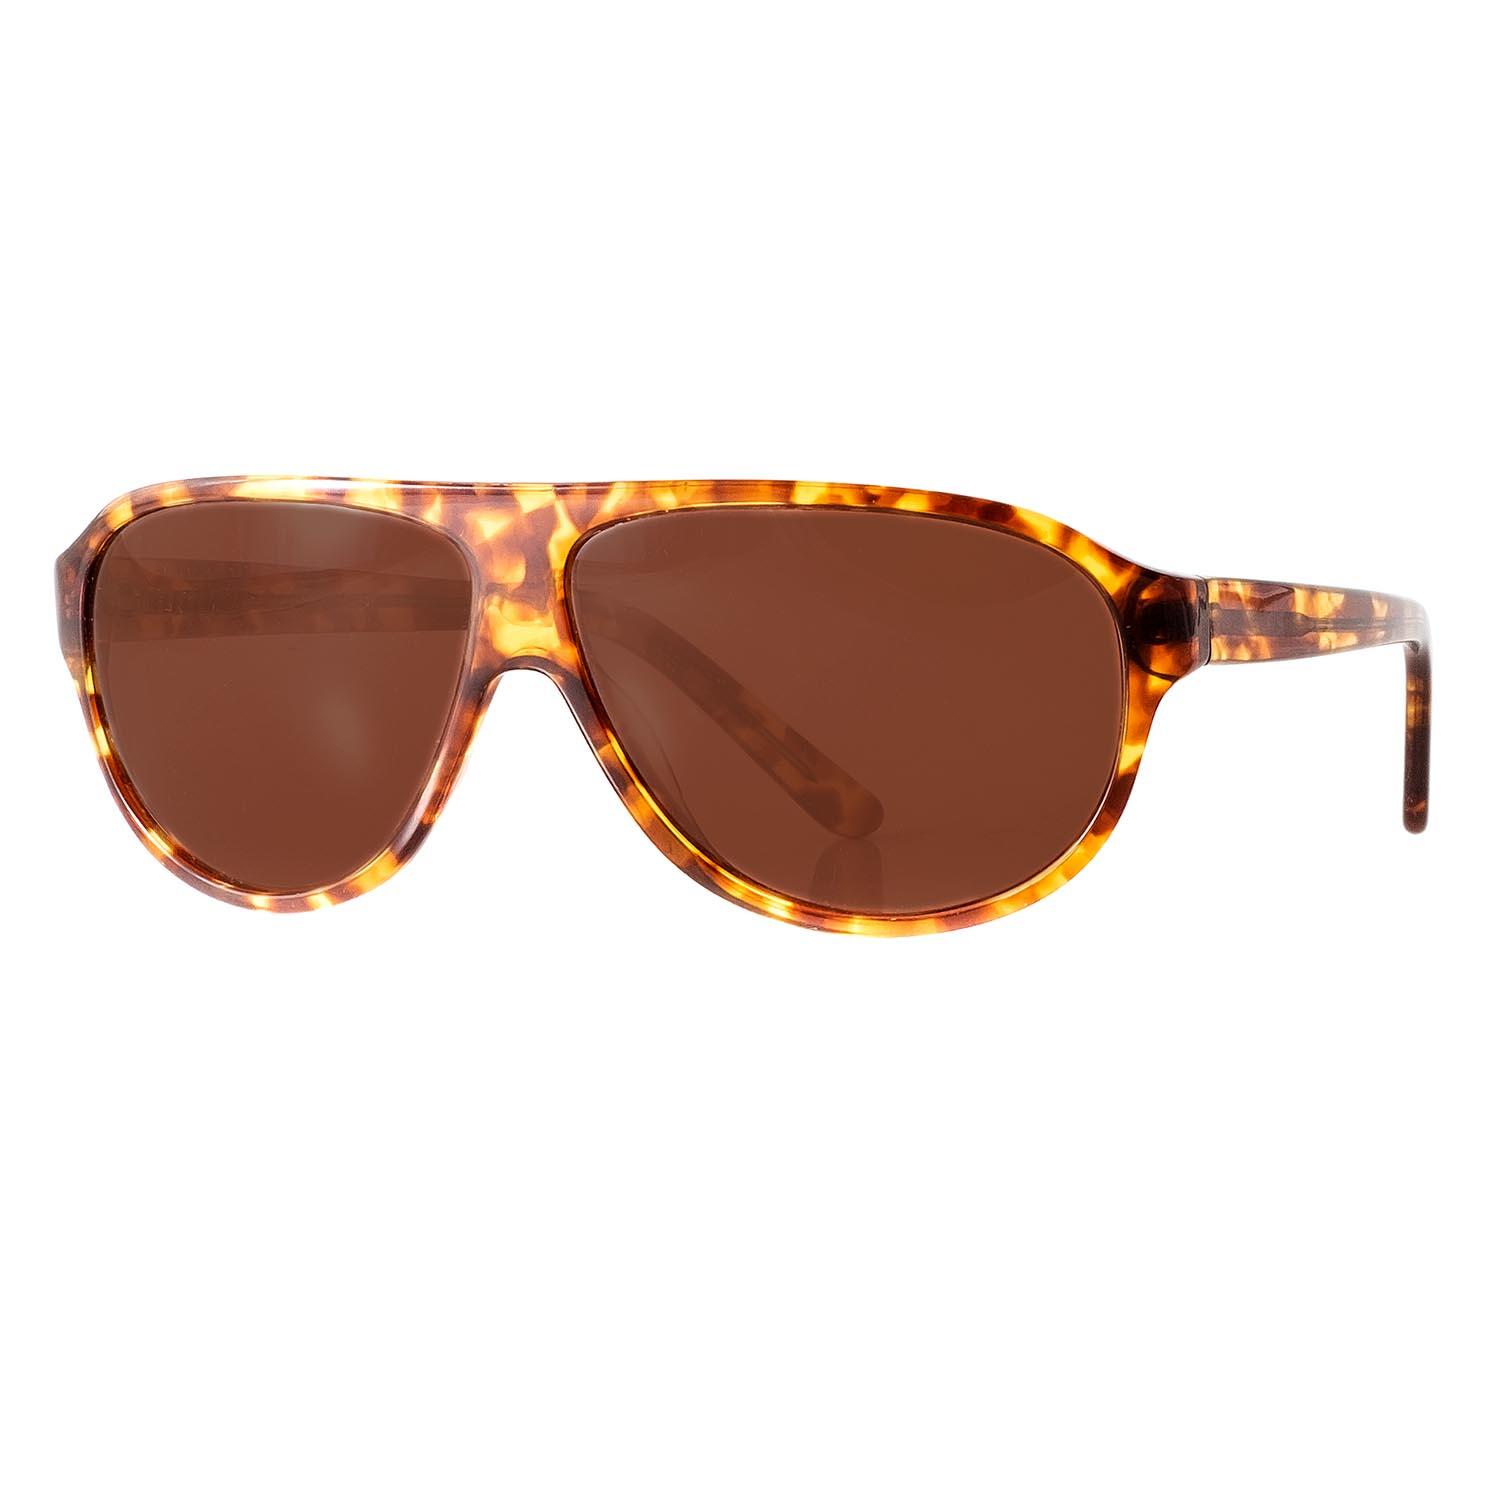 Gafas de sol P32002 color concha con lentes marrones